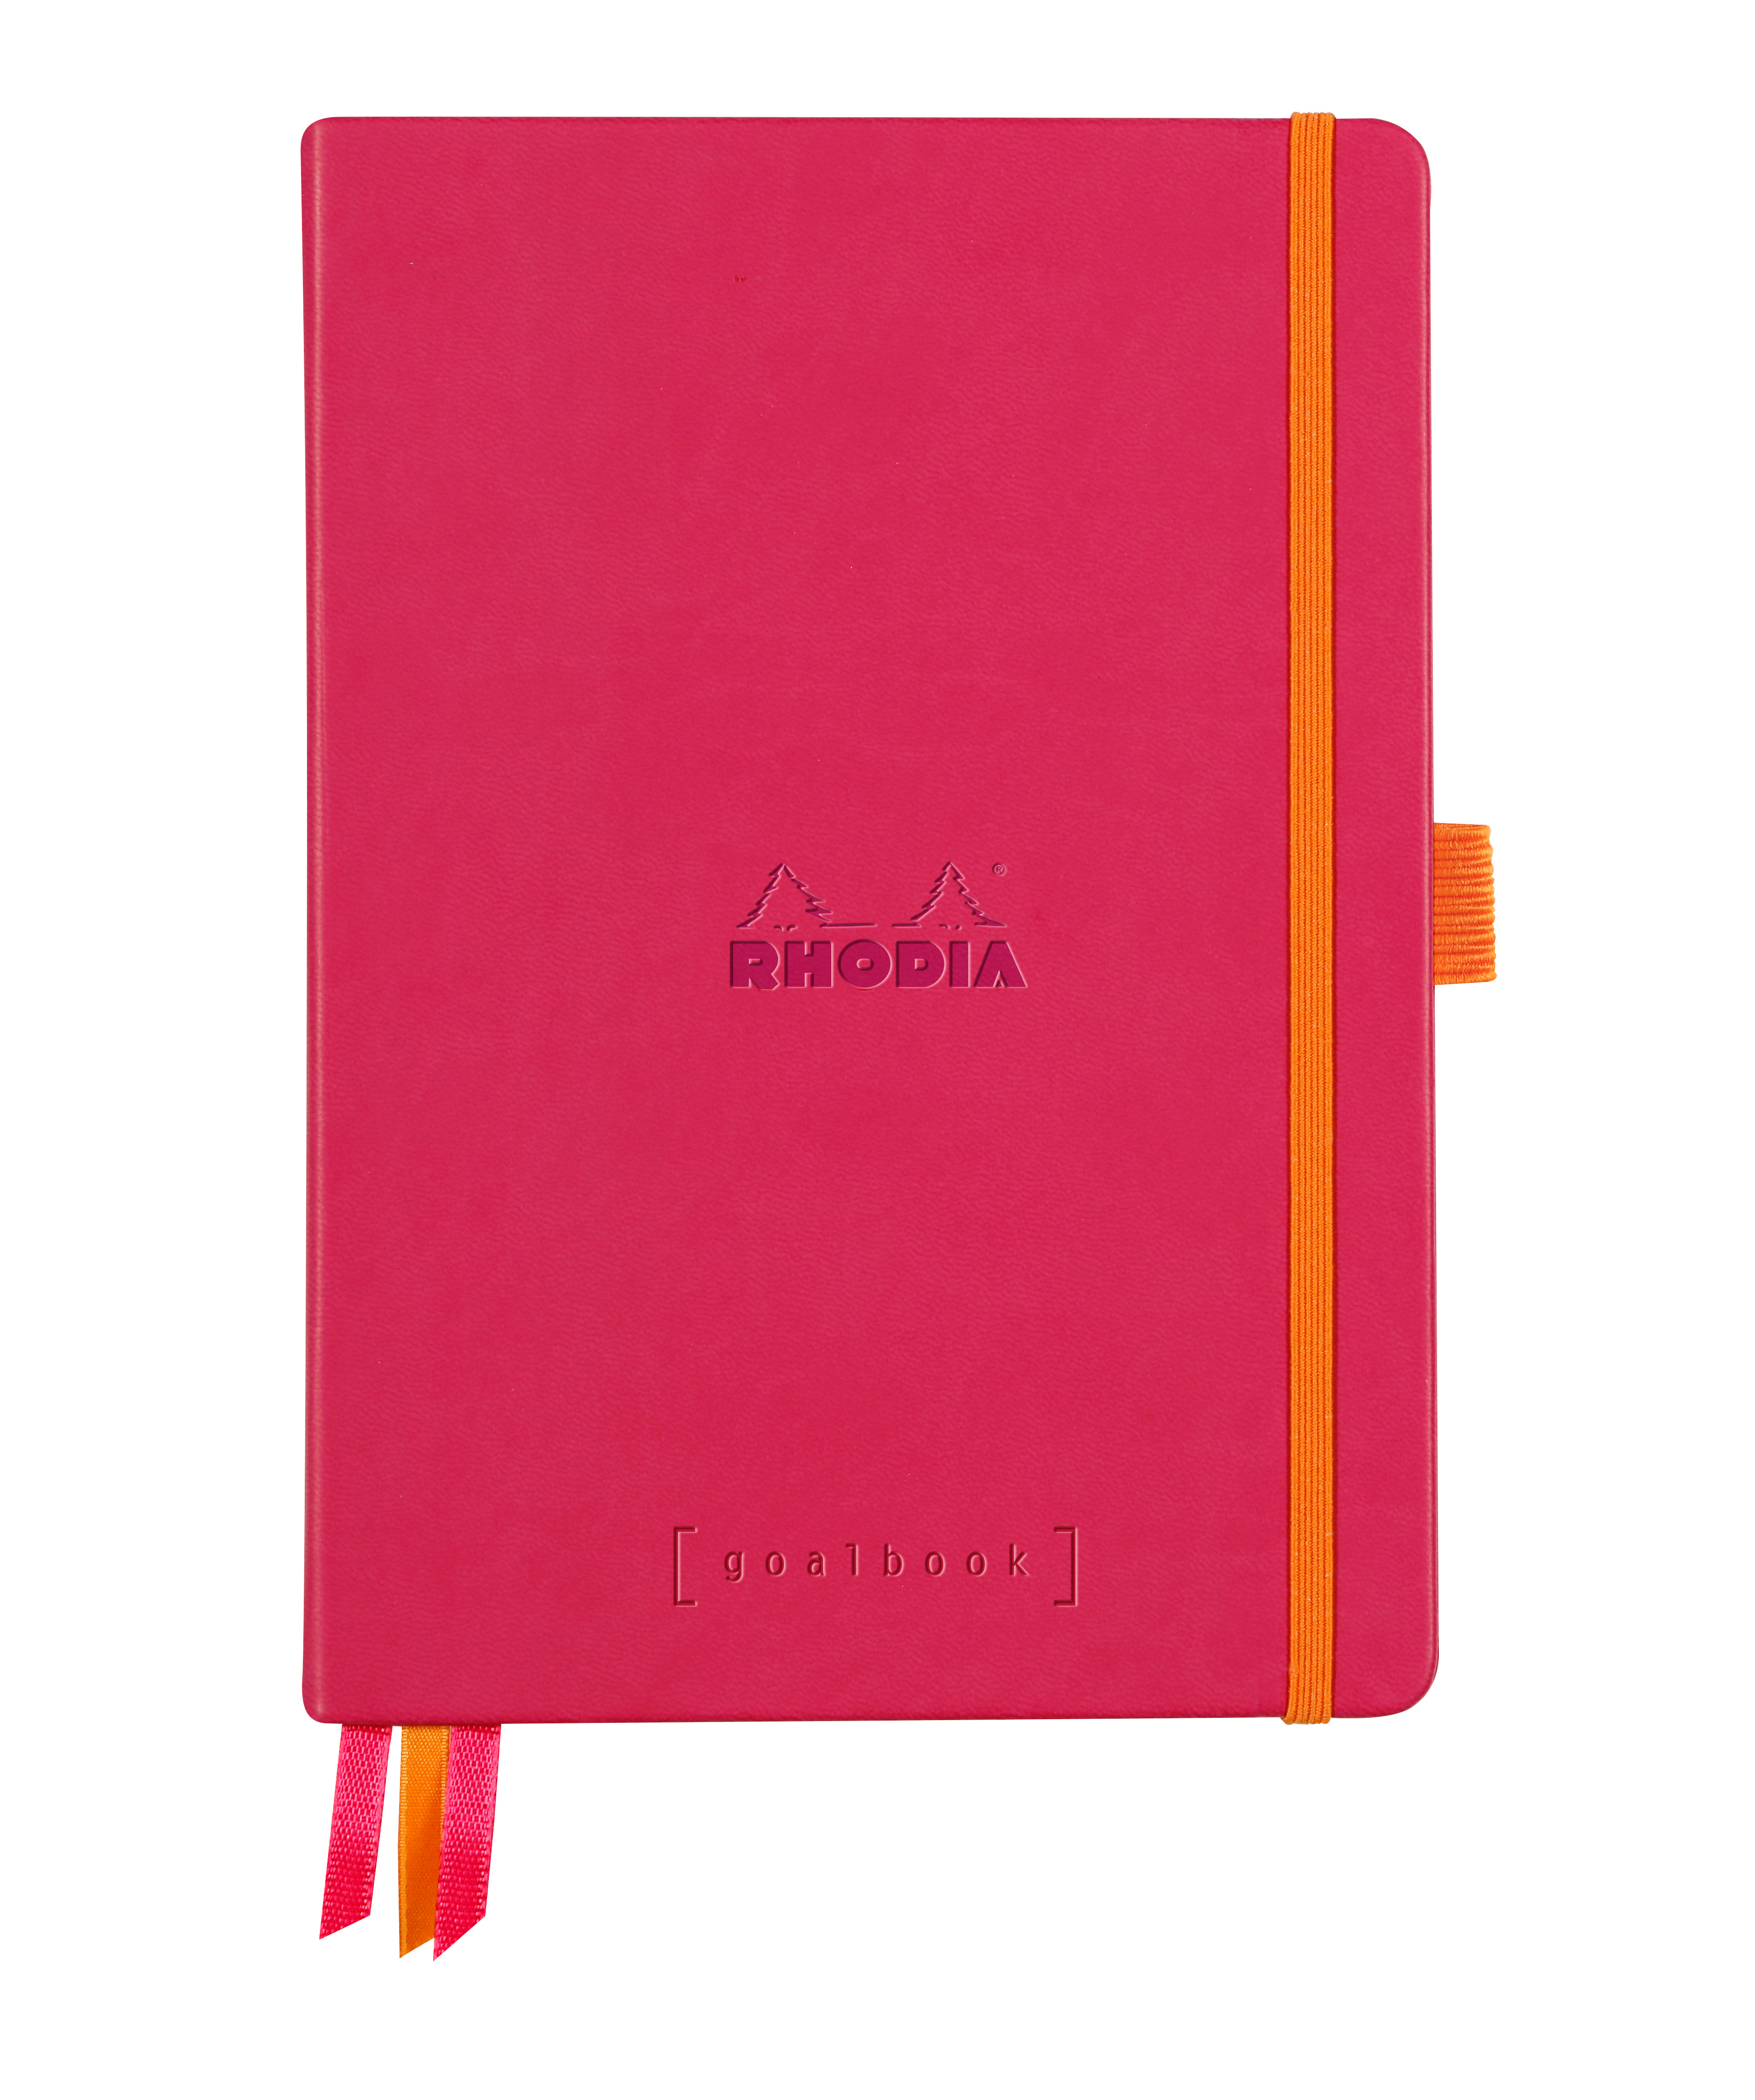 RHODIA Goalbook Carnet A5 118581C Hardcover framboise 240 f. Hardcover framboise 240 f.